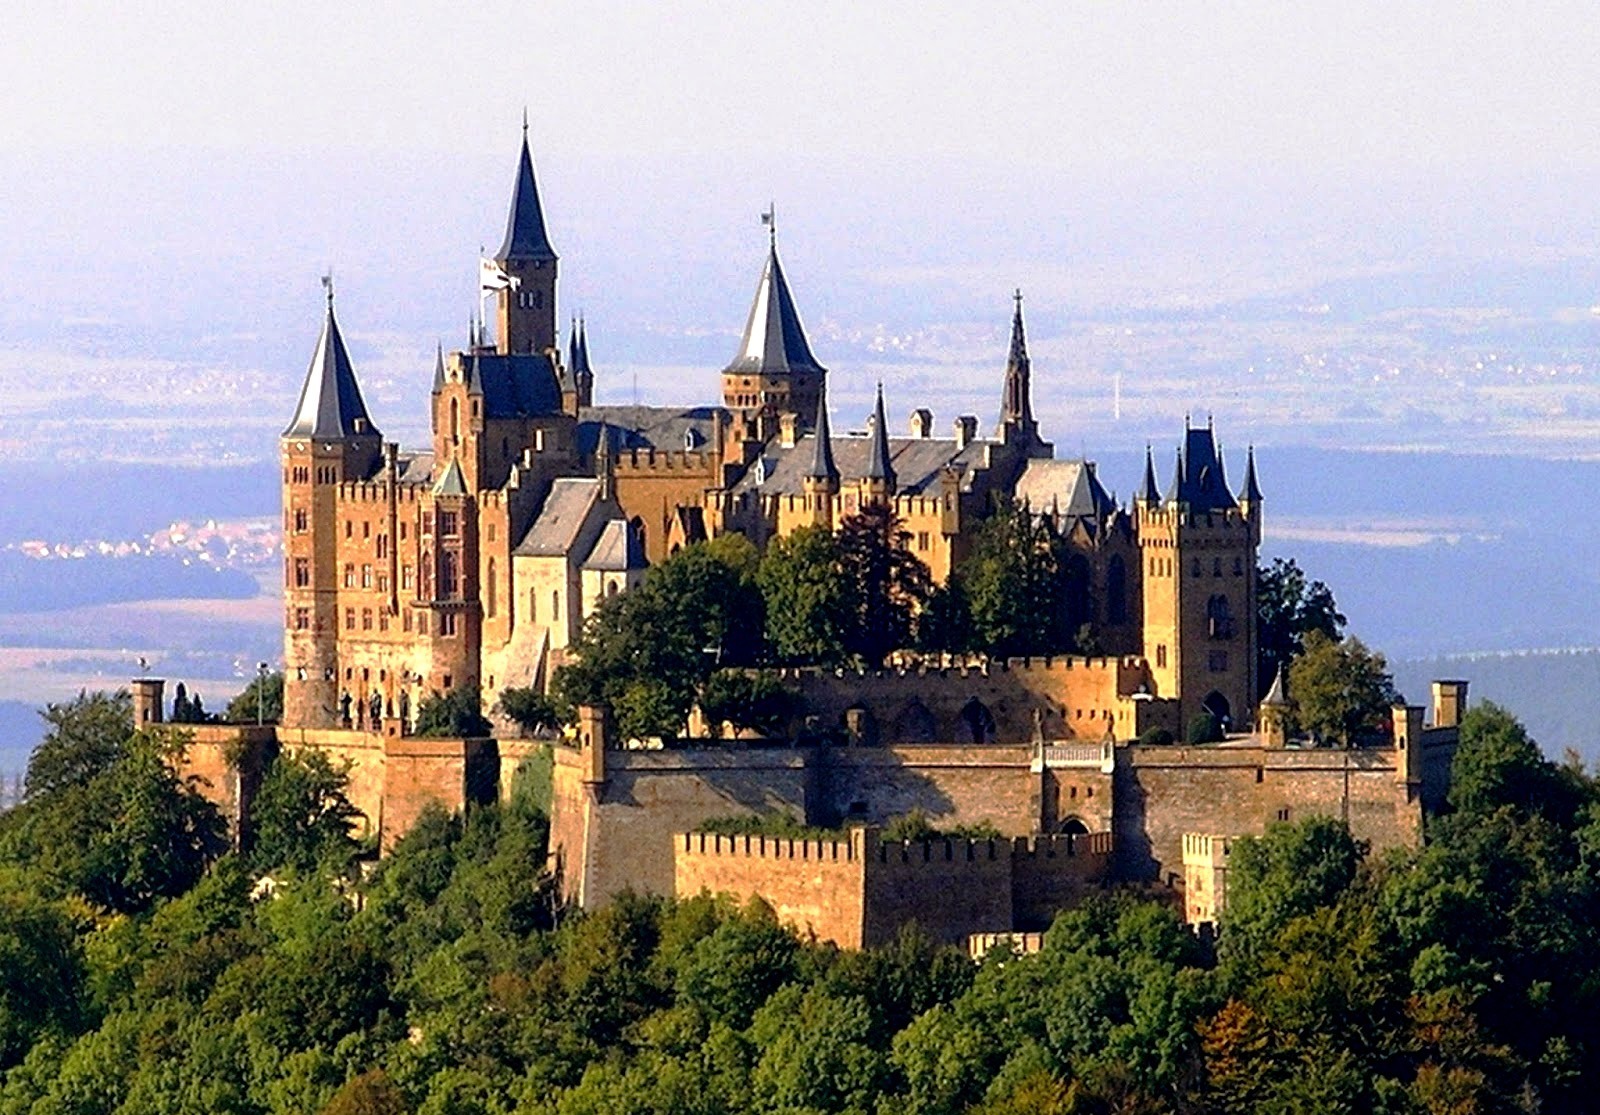 Известный средневековый замок. Hohenzollern замок Германия. Замок Гогенцоллерн Баден-Вюртемберг. Хехинген замок Гогенцоллерн. Замок Гогенцоллерн (Burg Hohenzollern), Германия.